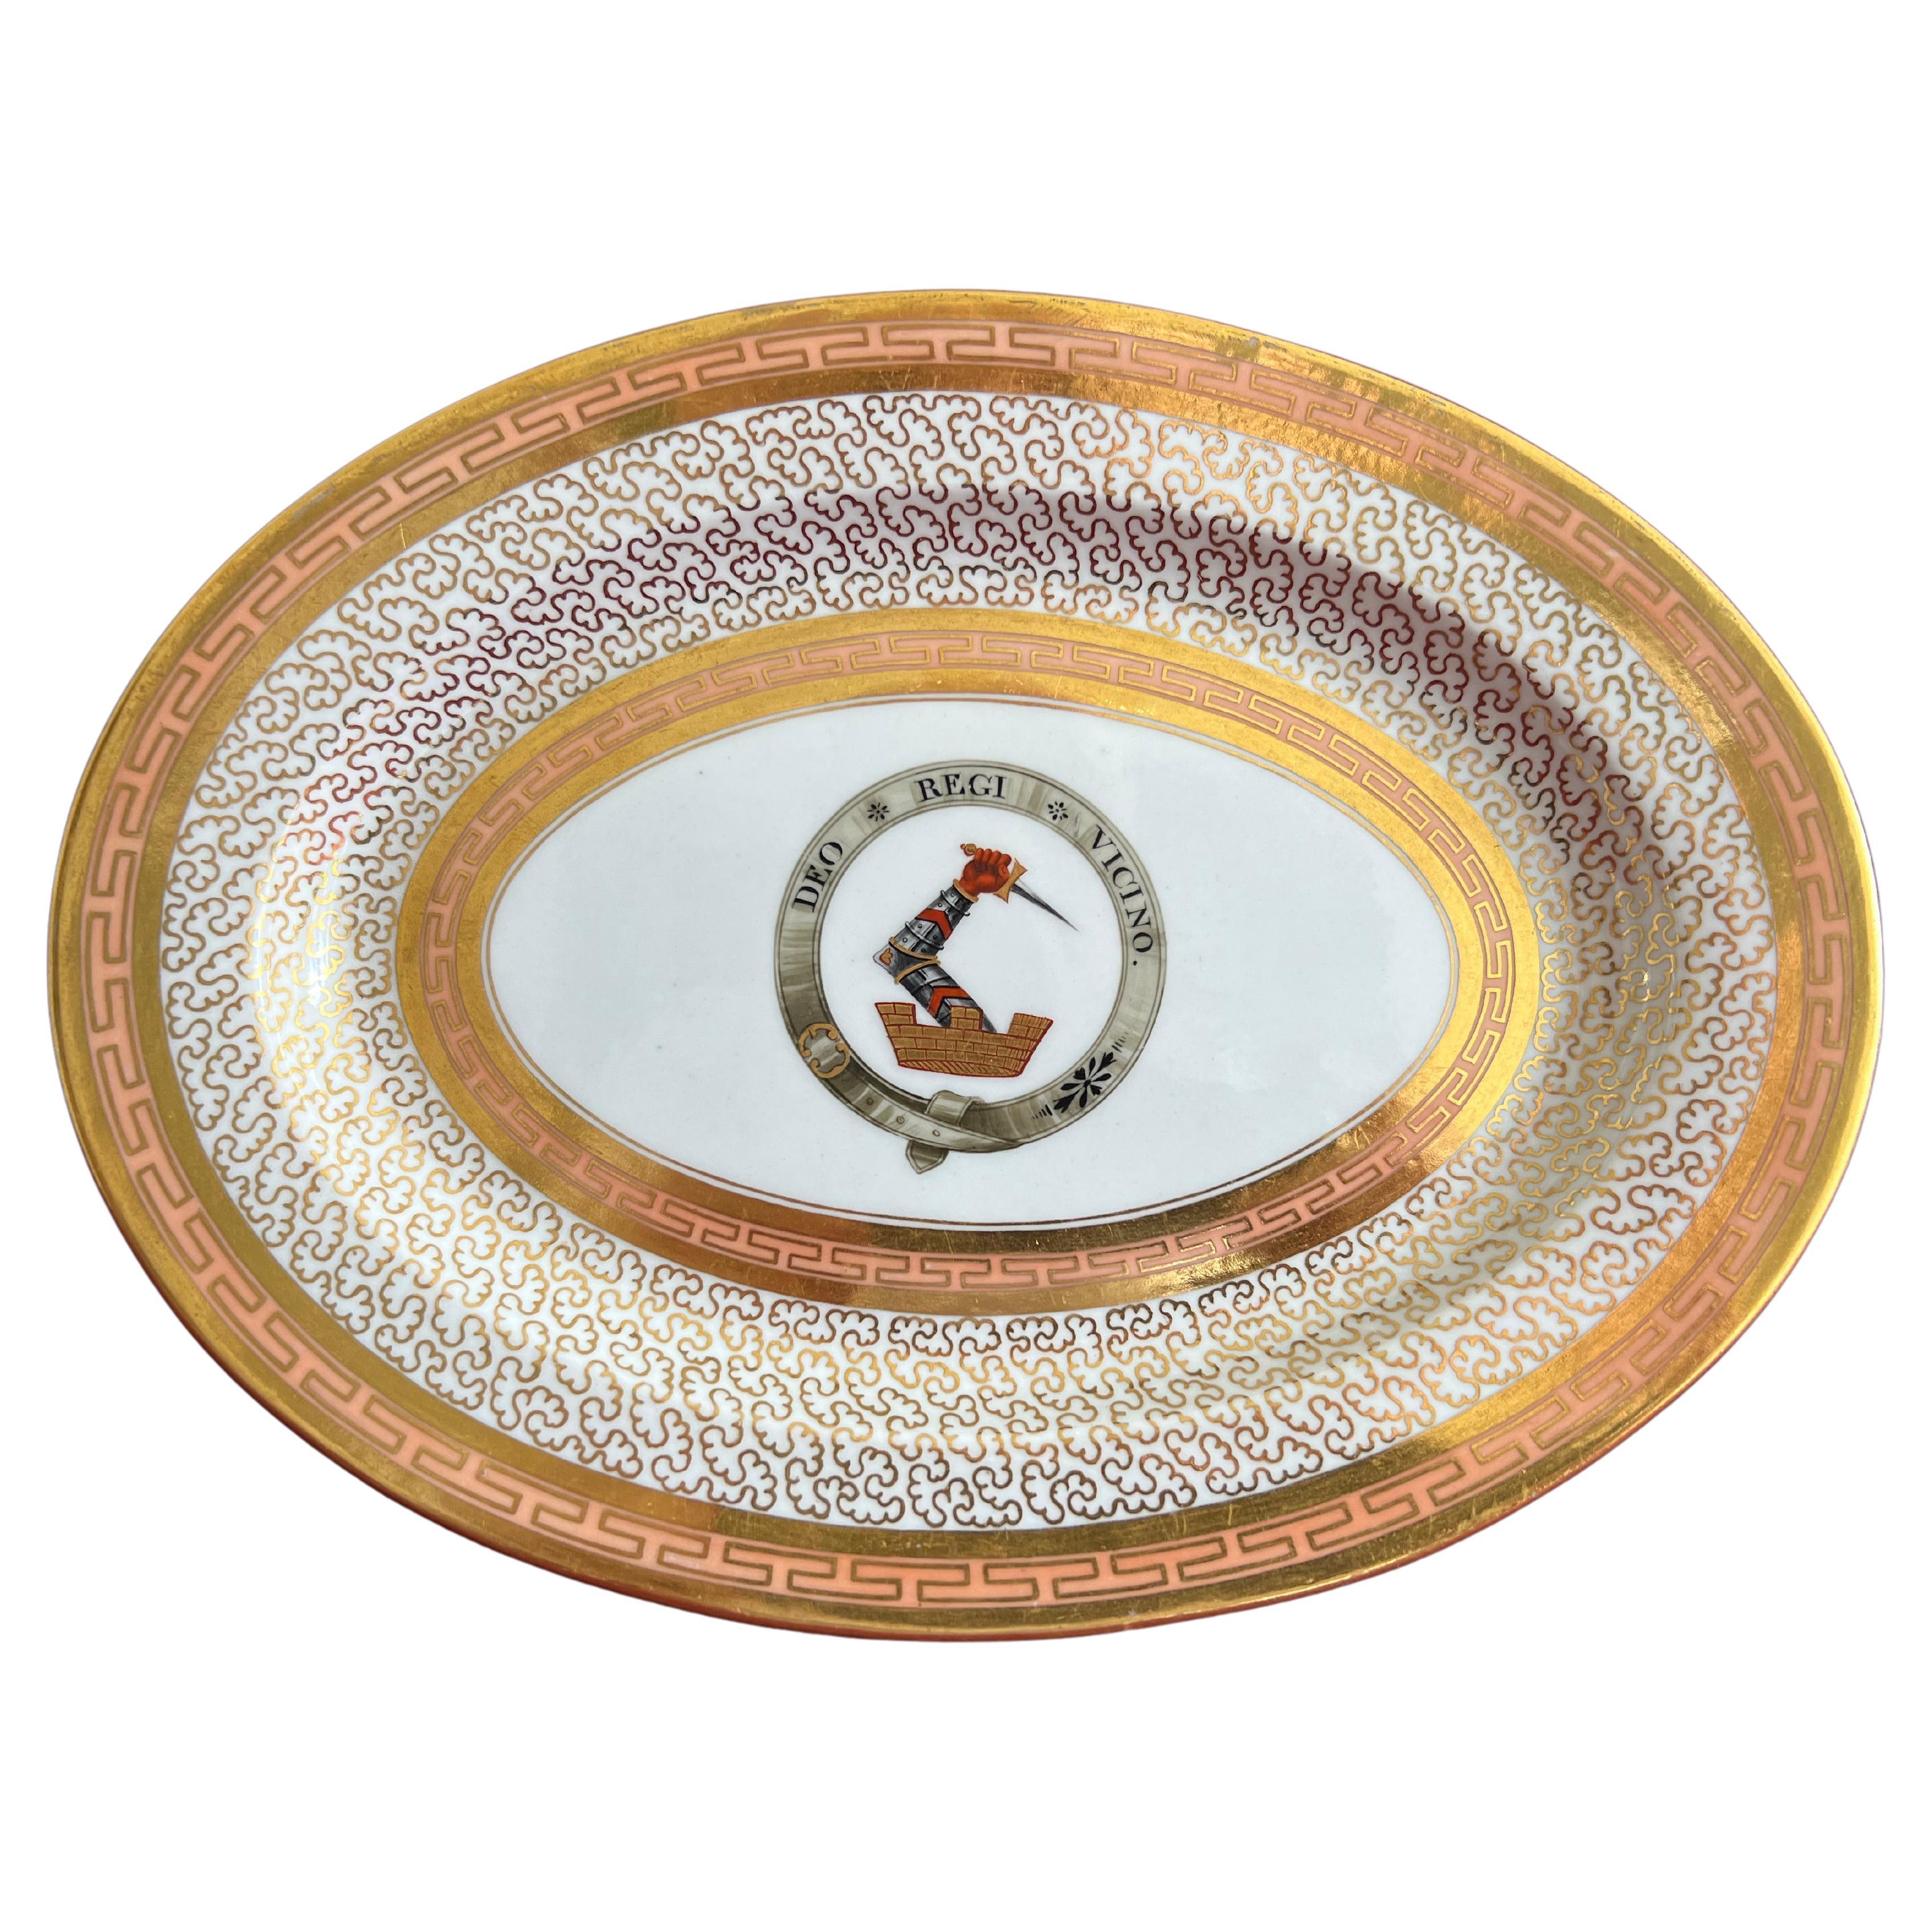 Exceptional Barr Flight Barr Worcester Porcelain Platter, 1804-1813 For Sale